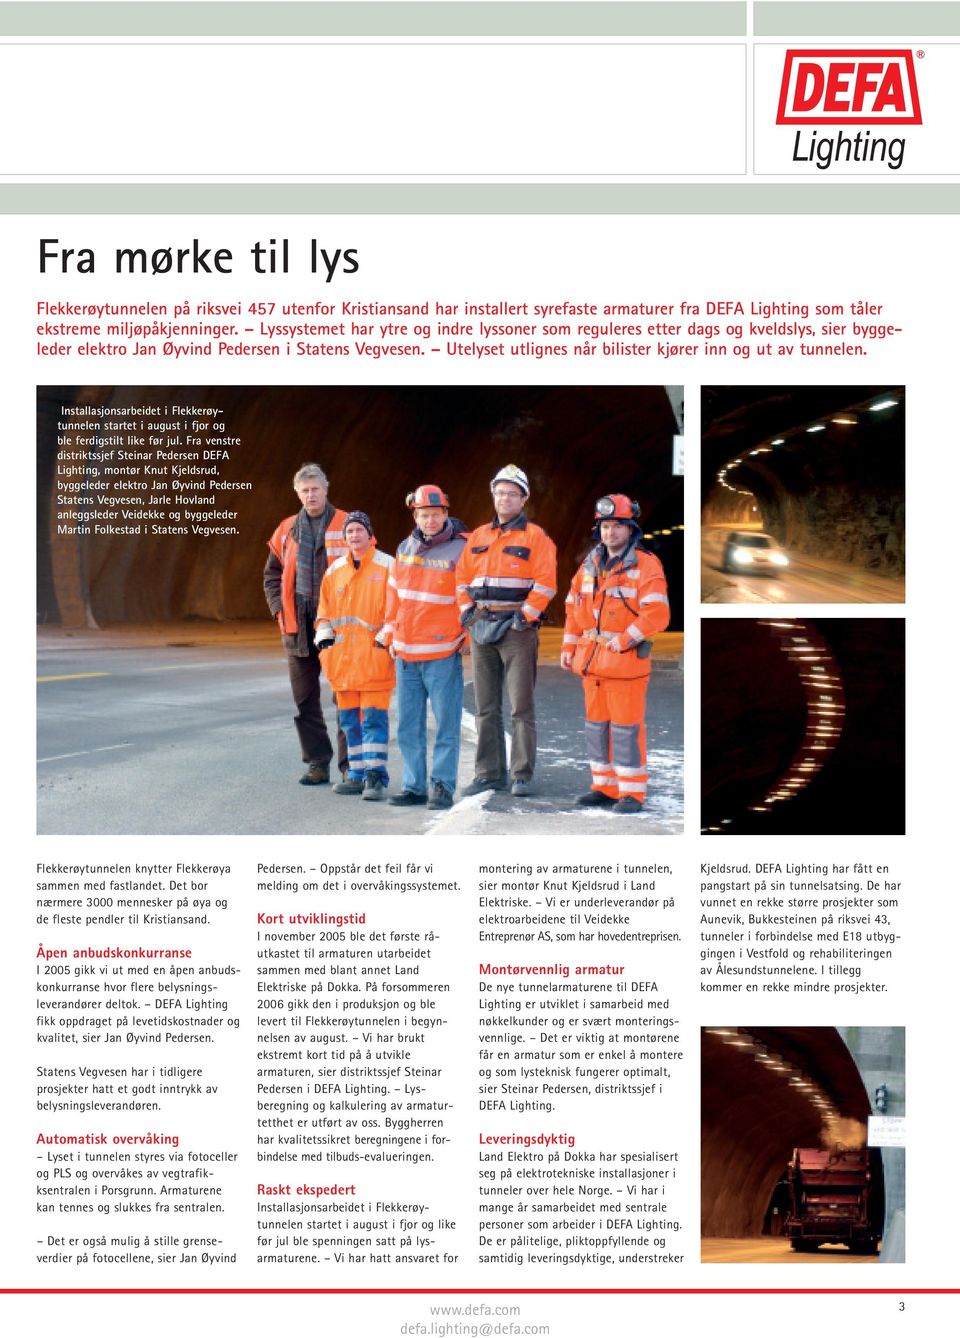 Utelyset utlignes når bilister kjører inn og ut av tunnelen. Installasjonsarbeidet i Flekkerøytunnelen startet i august i fjor og ble ferdigstilt like før jul.